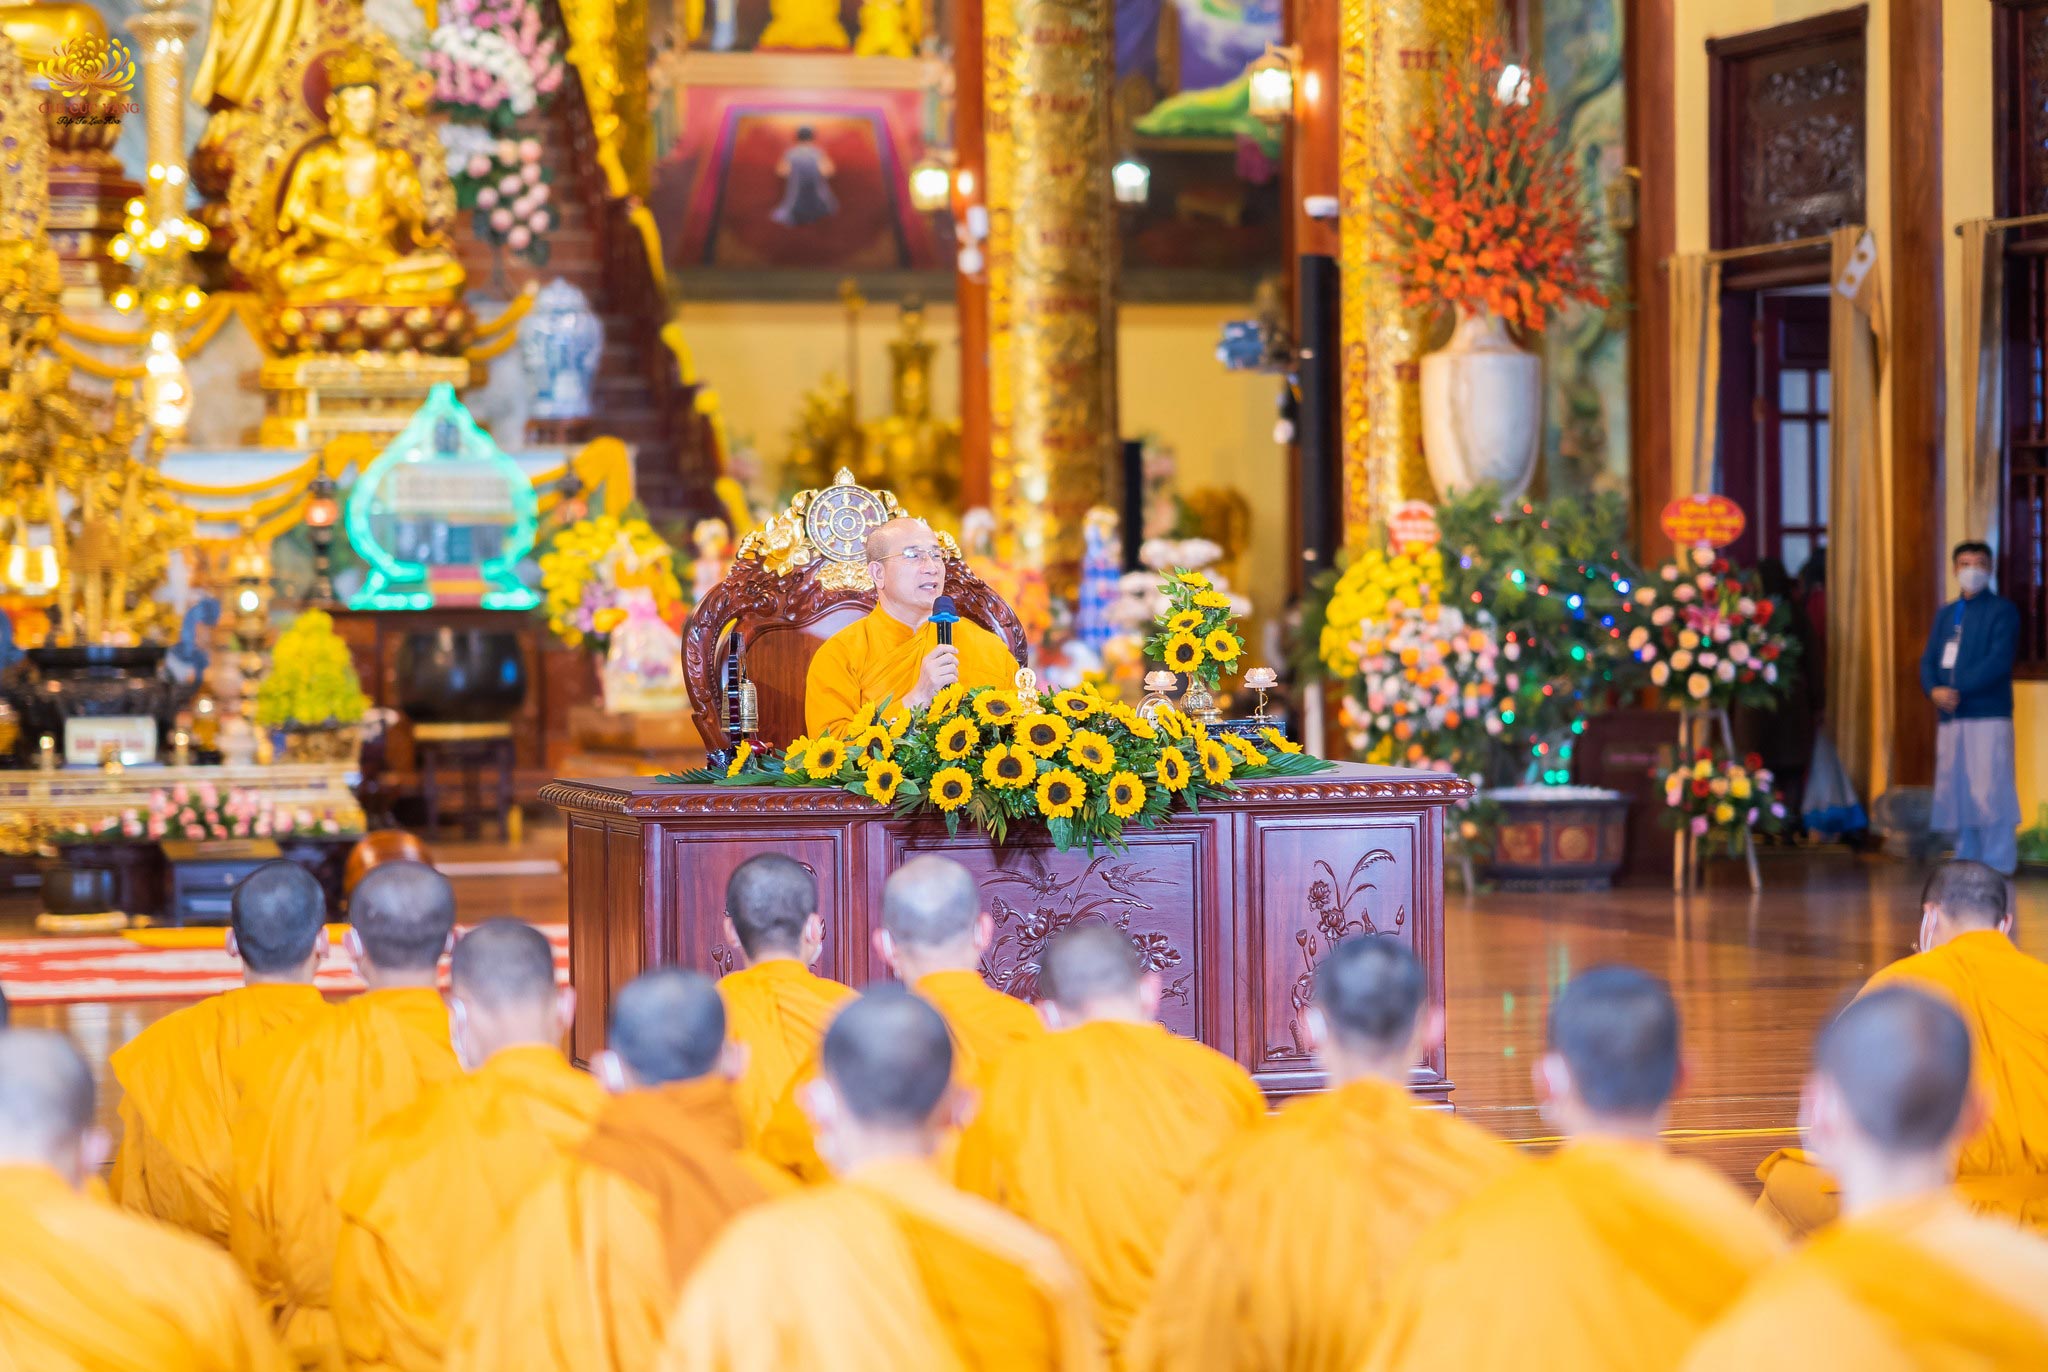 Sư Phụ Thích Trúc Thái Minh thuyết Pháp cho chư tôn đức Tăng Ni và nhân dân, Phật tử trong buổi lễ khai Pháp đầu năm